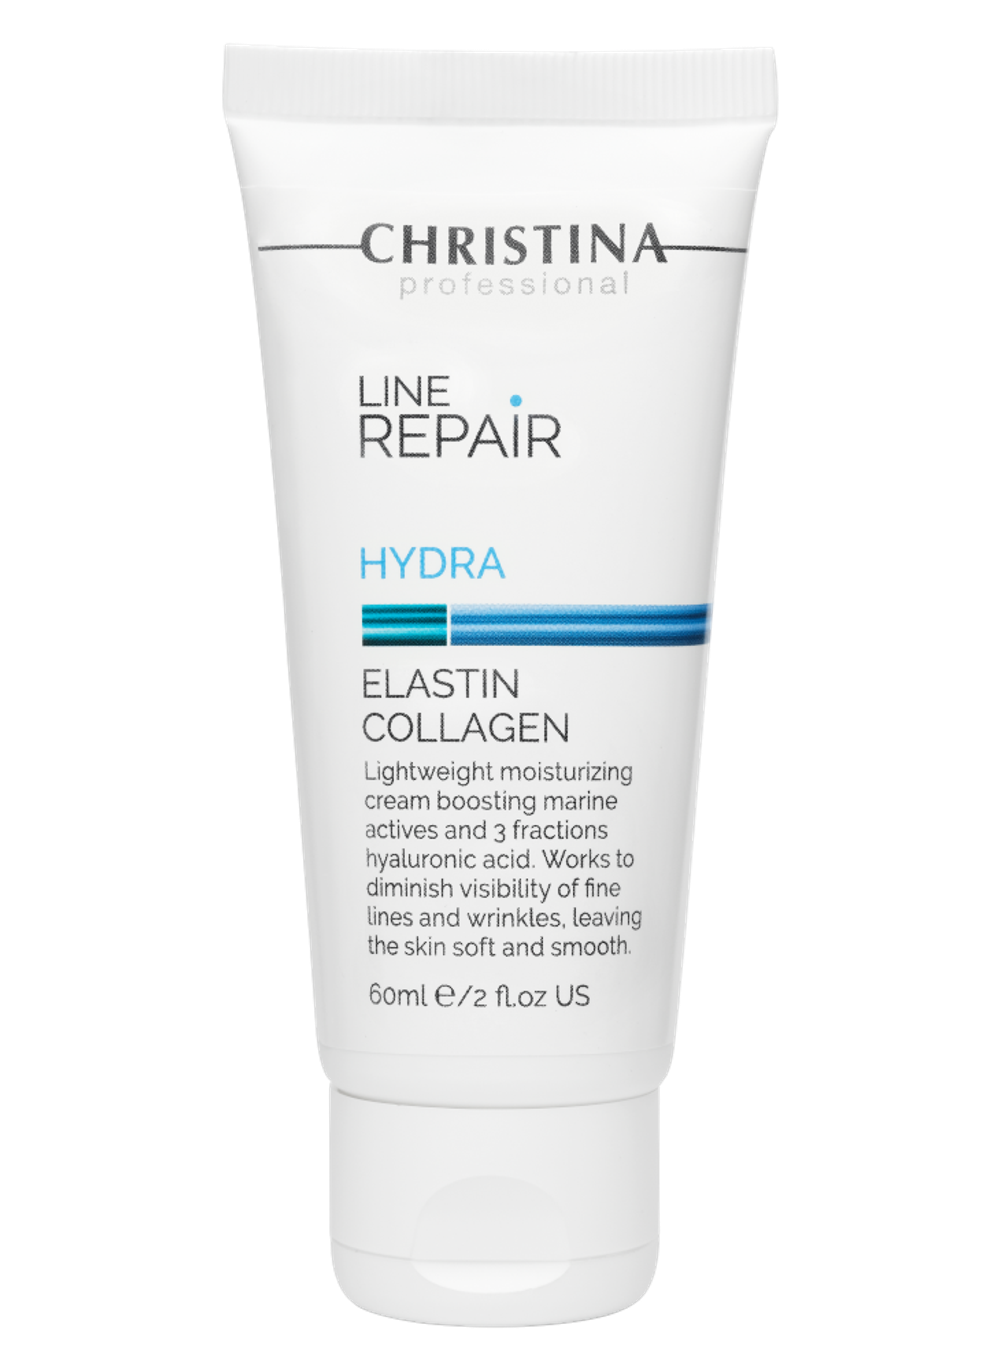 CHRISTINA Line Repair Hydra Elastin Collagen